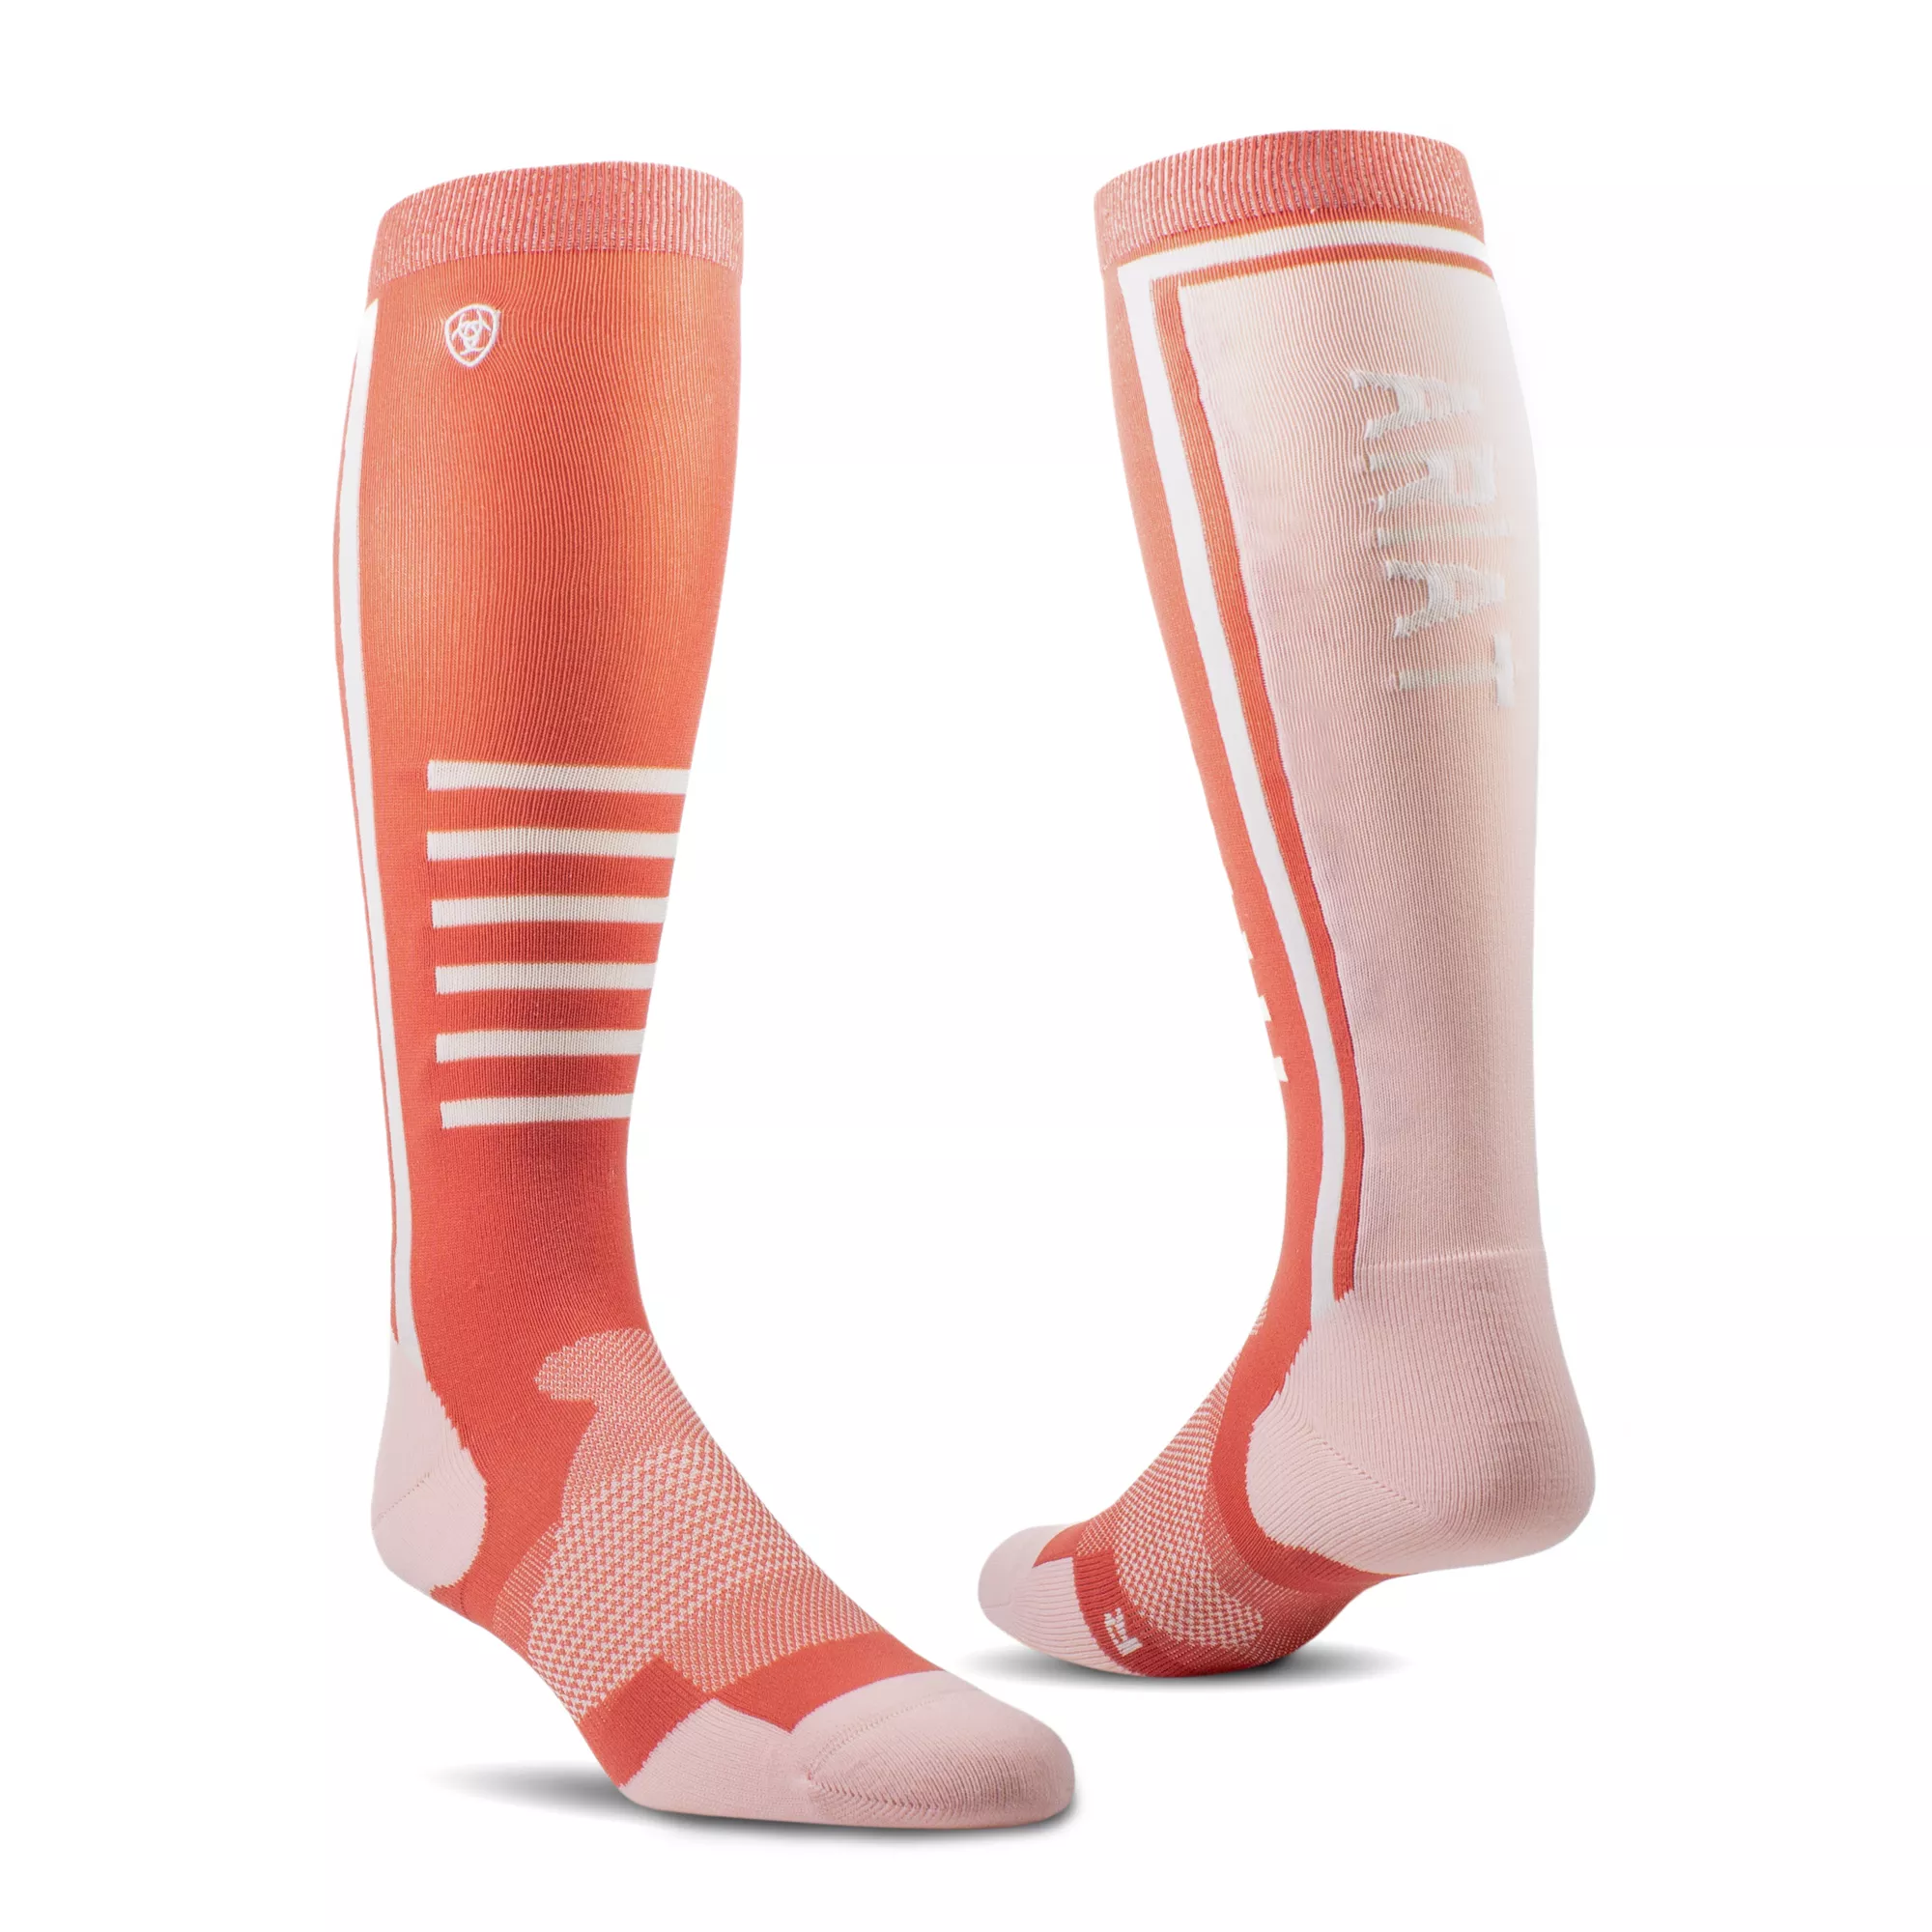 AriatTEK Slimline Performance Socks Faded Rose/Blush